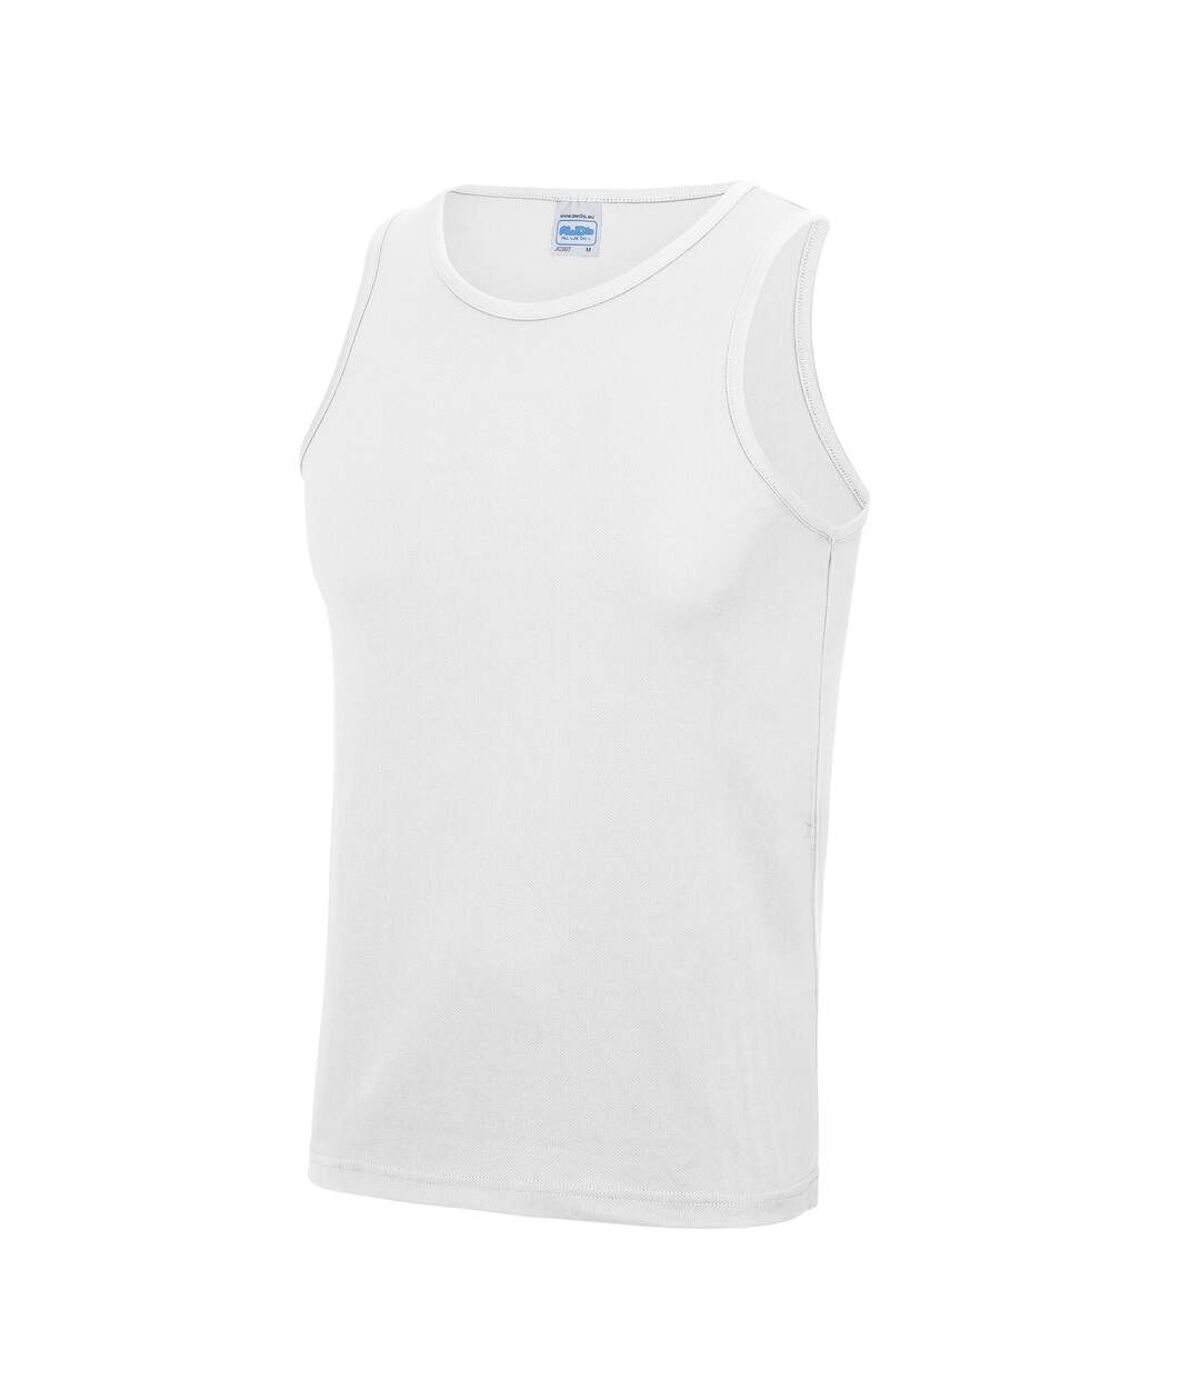 Just Cool Mens Sports Gym Plain Tank/Vest Top (Arctic White)